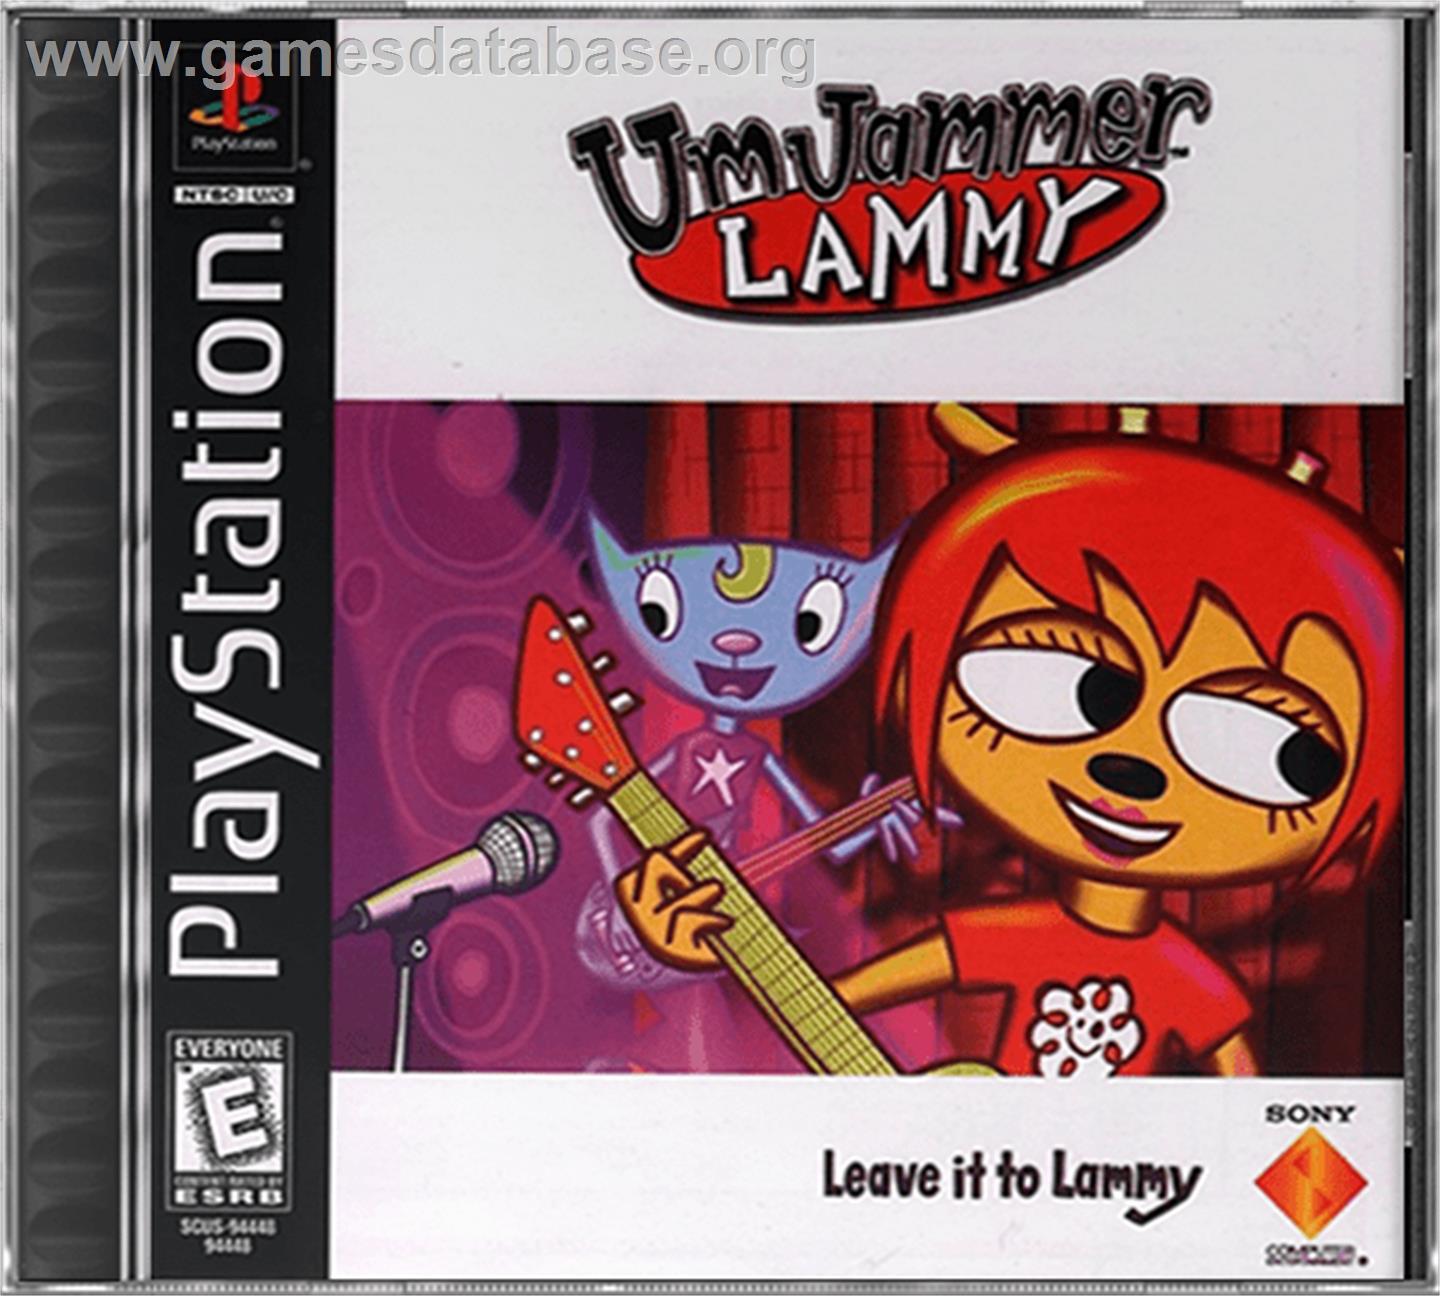 Um Jammer Lammy - Sony Playstation - Artwork - Box